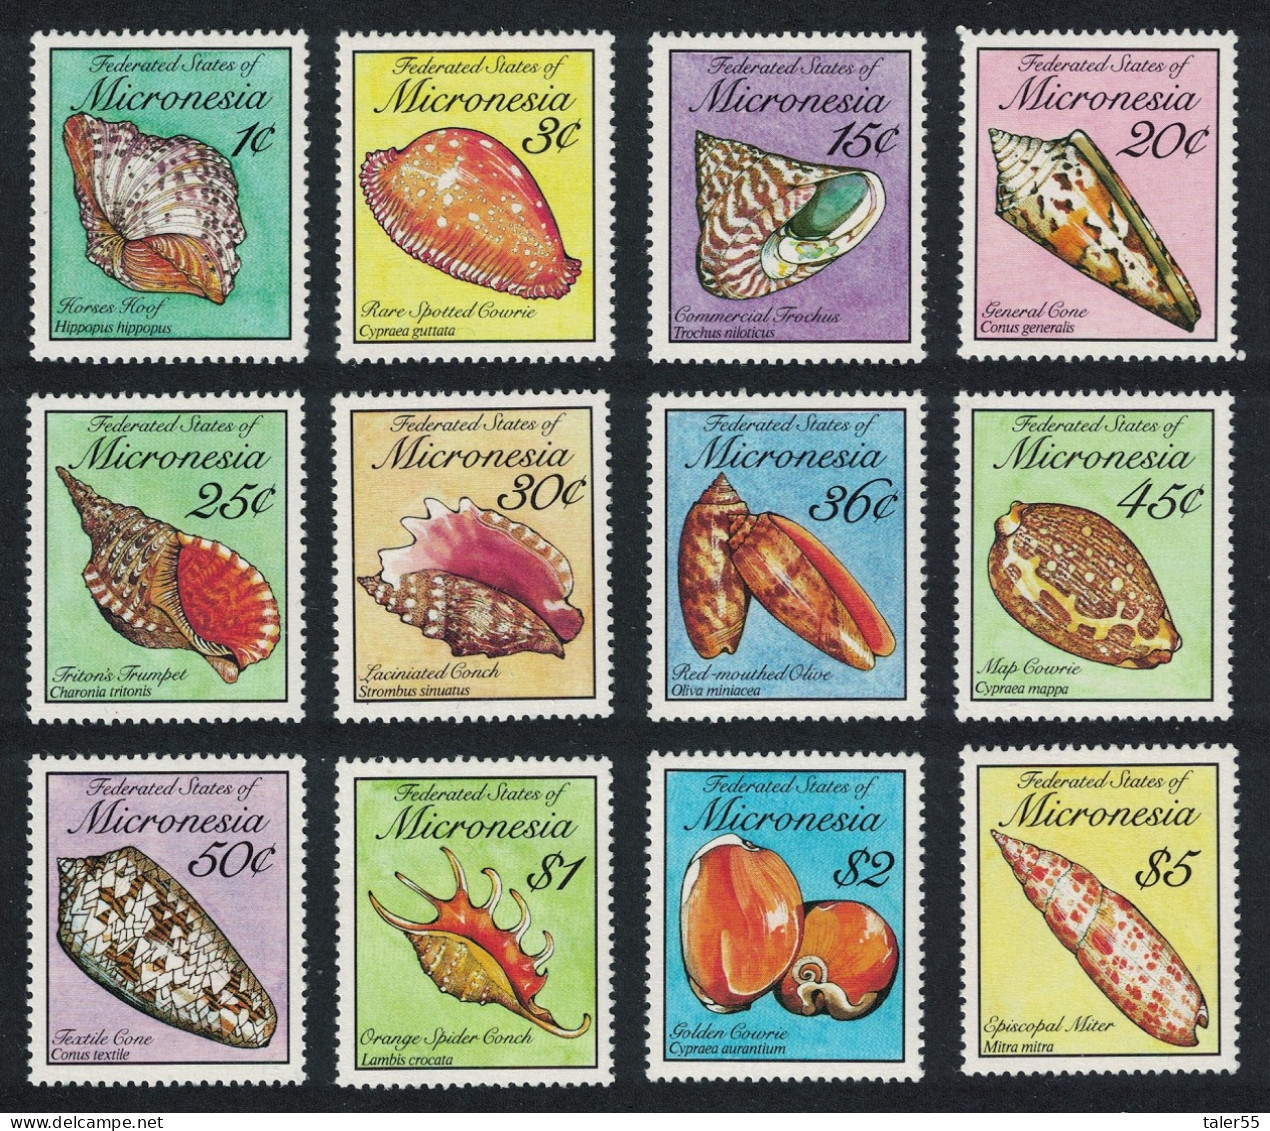 Micronesia Sea Shells 12v Face Value US$11.50 1989 MNH SG#136-147 MI#142-153 Sc#83-102 - Micronesia